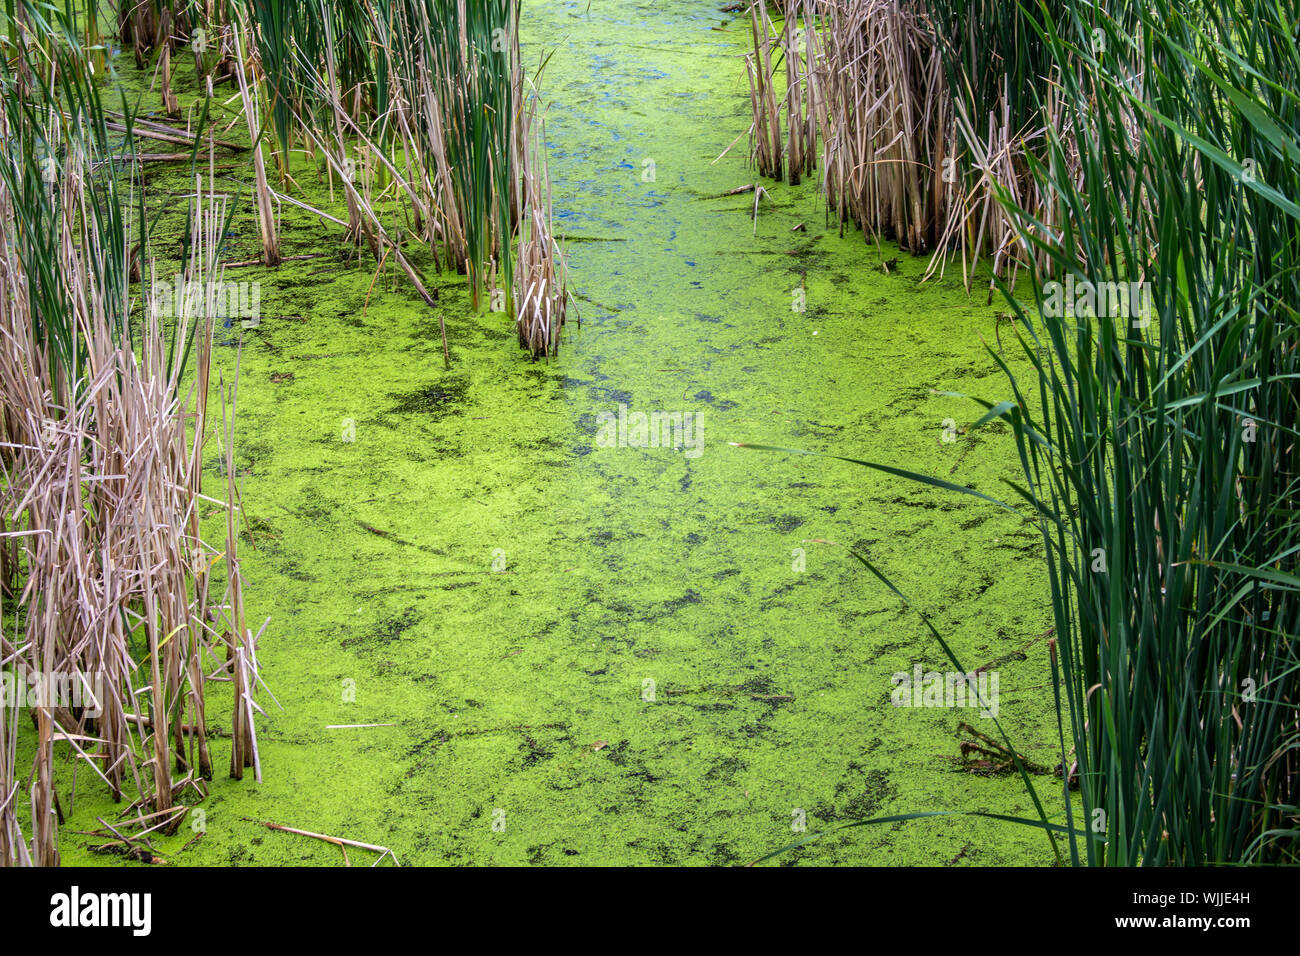 Colore verde brillante alghe ricopre la superficie di acqua in zone umide paludose, circondato da erbe e canne. Foto Stock